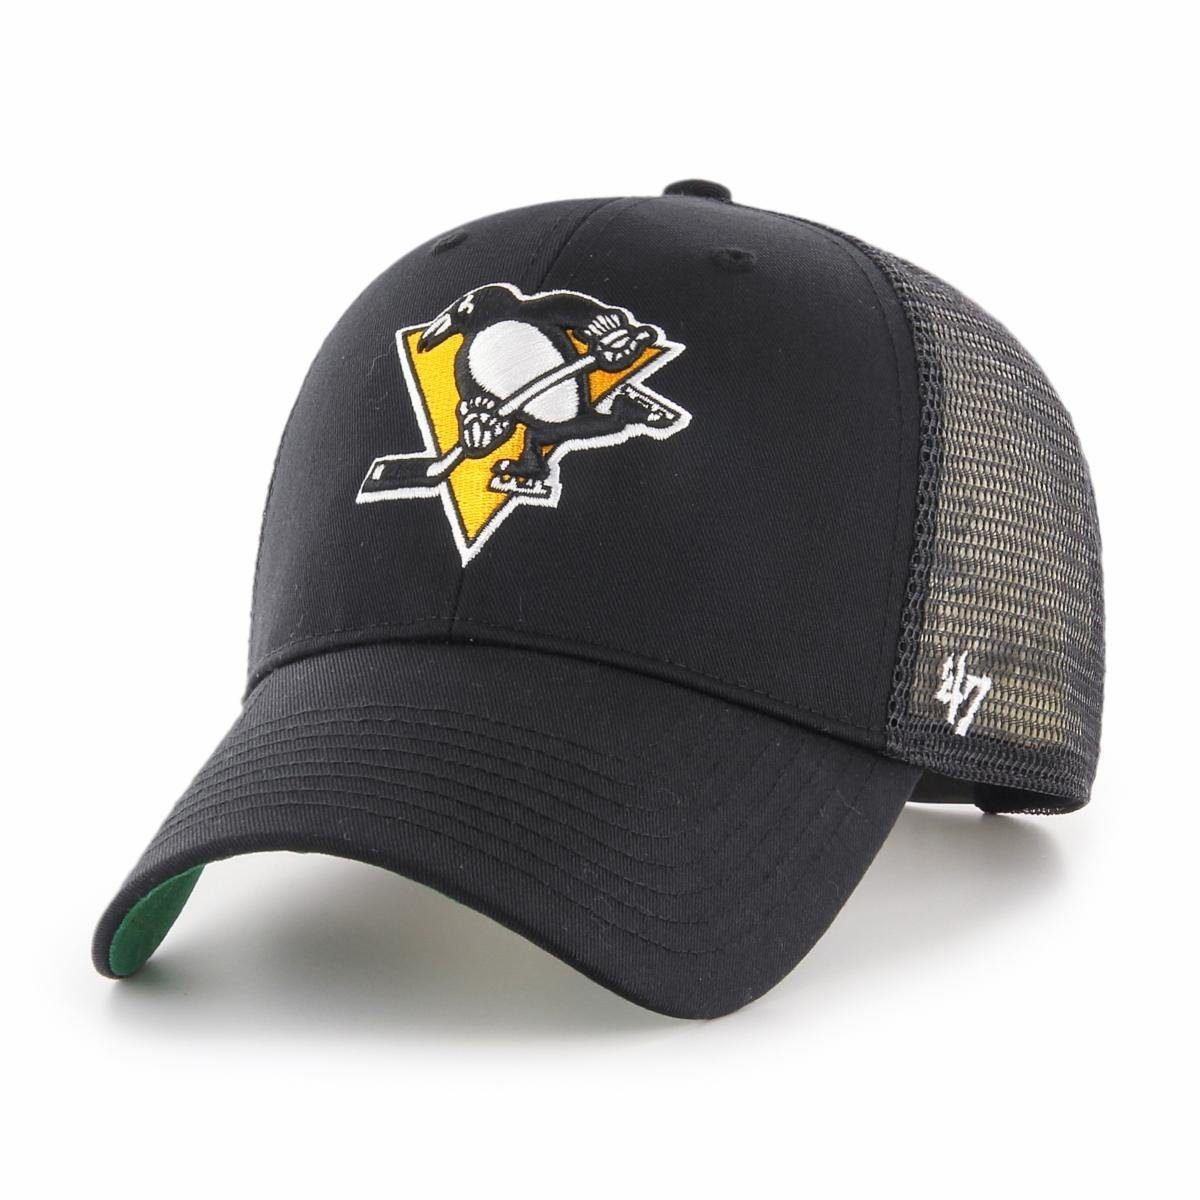 '47 Brand Baseball Cap '47 Brand Trucker Cap NHL Pittsburgh Penguins